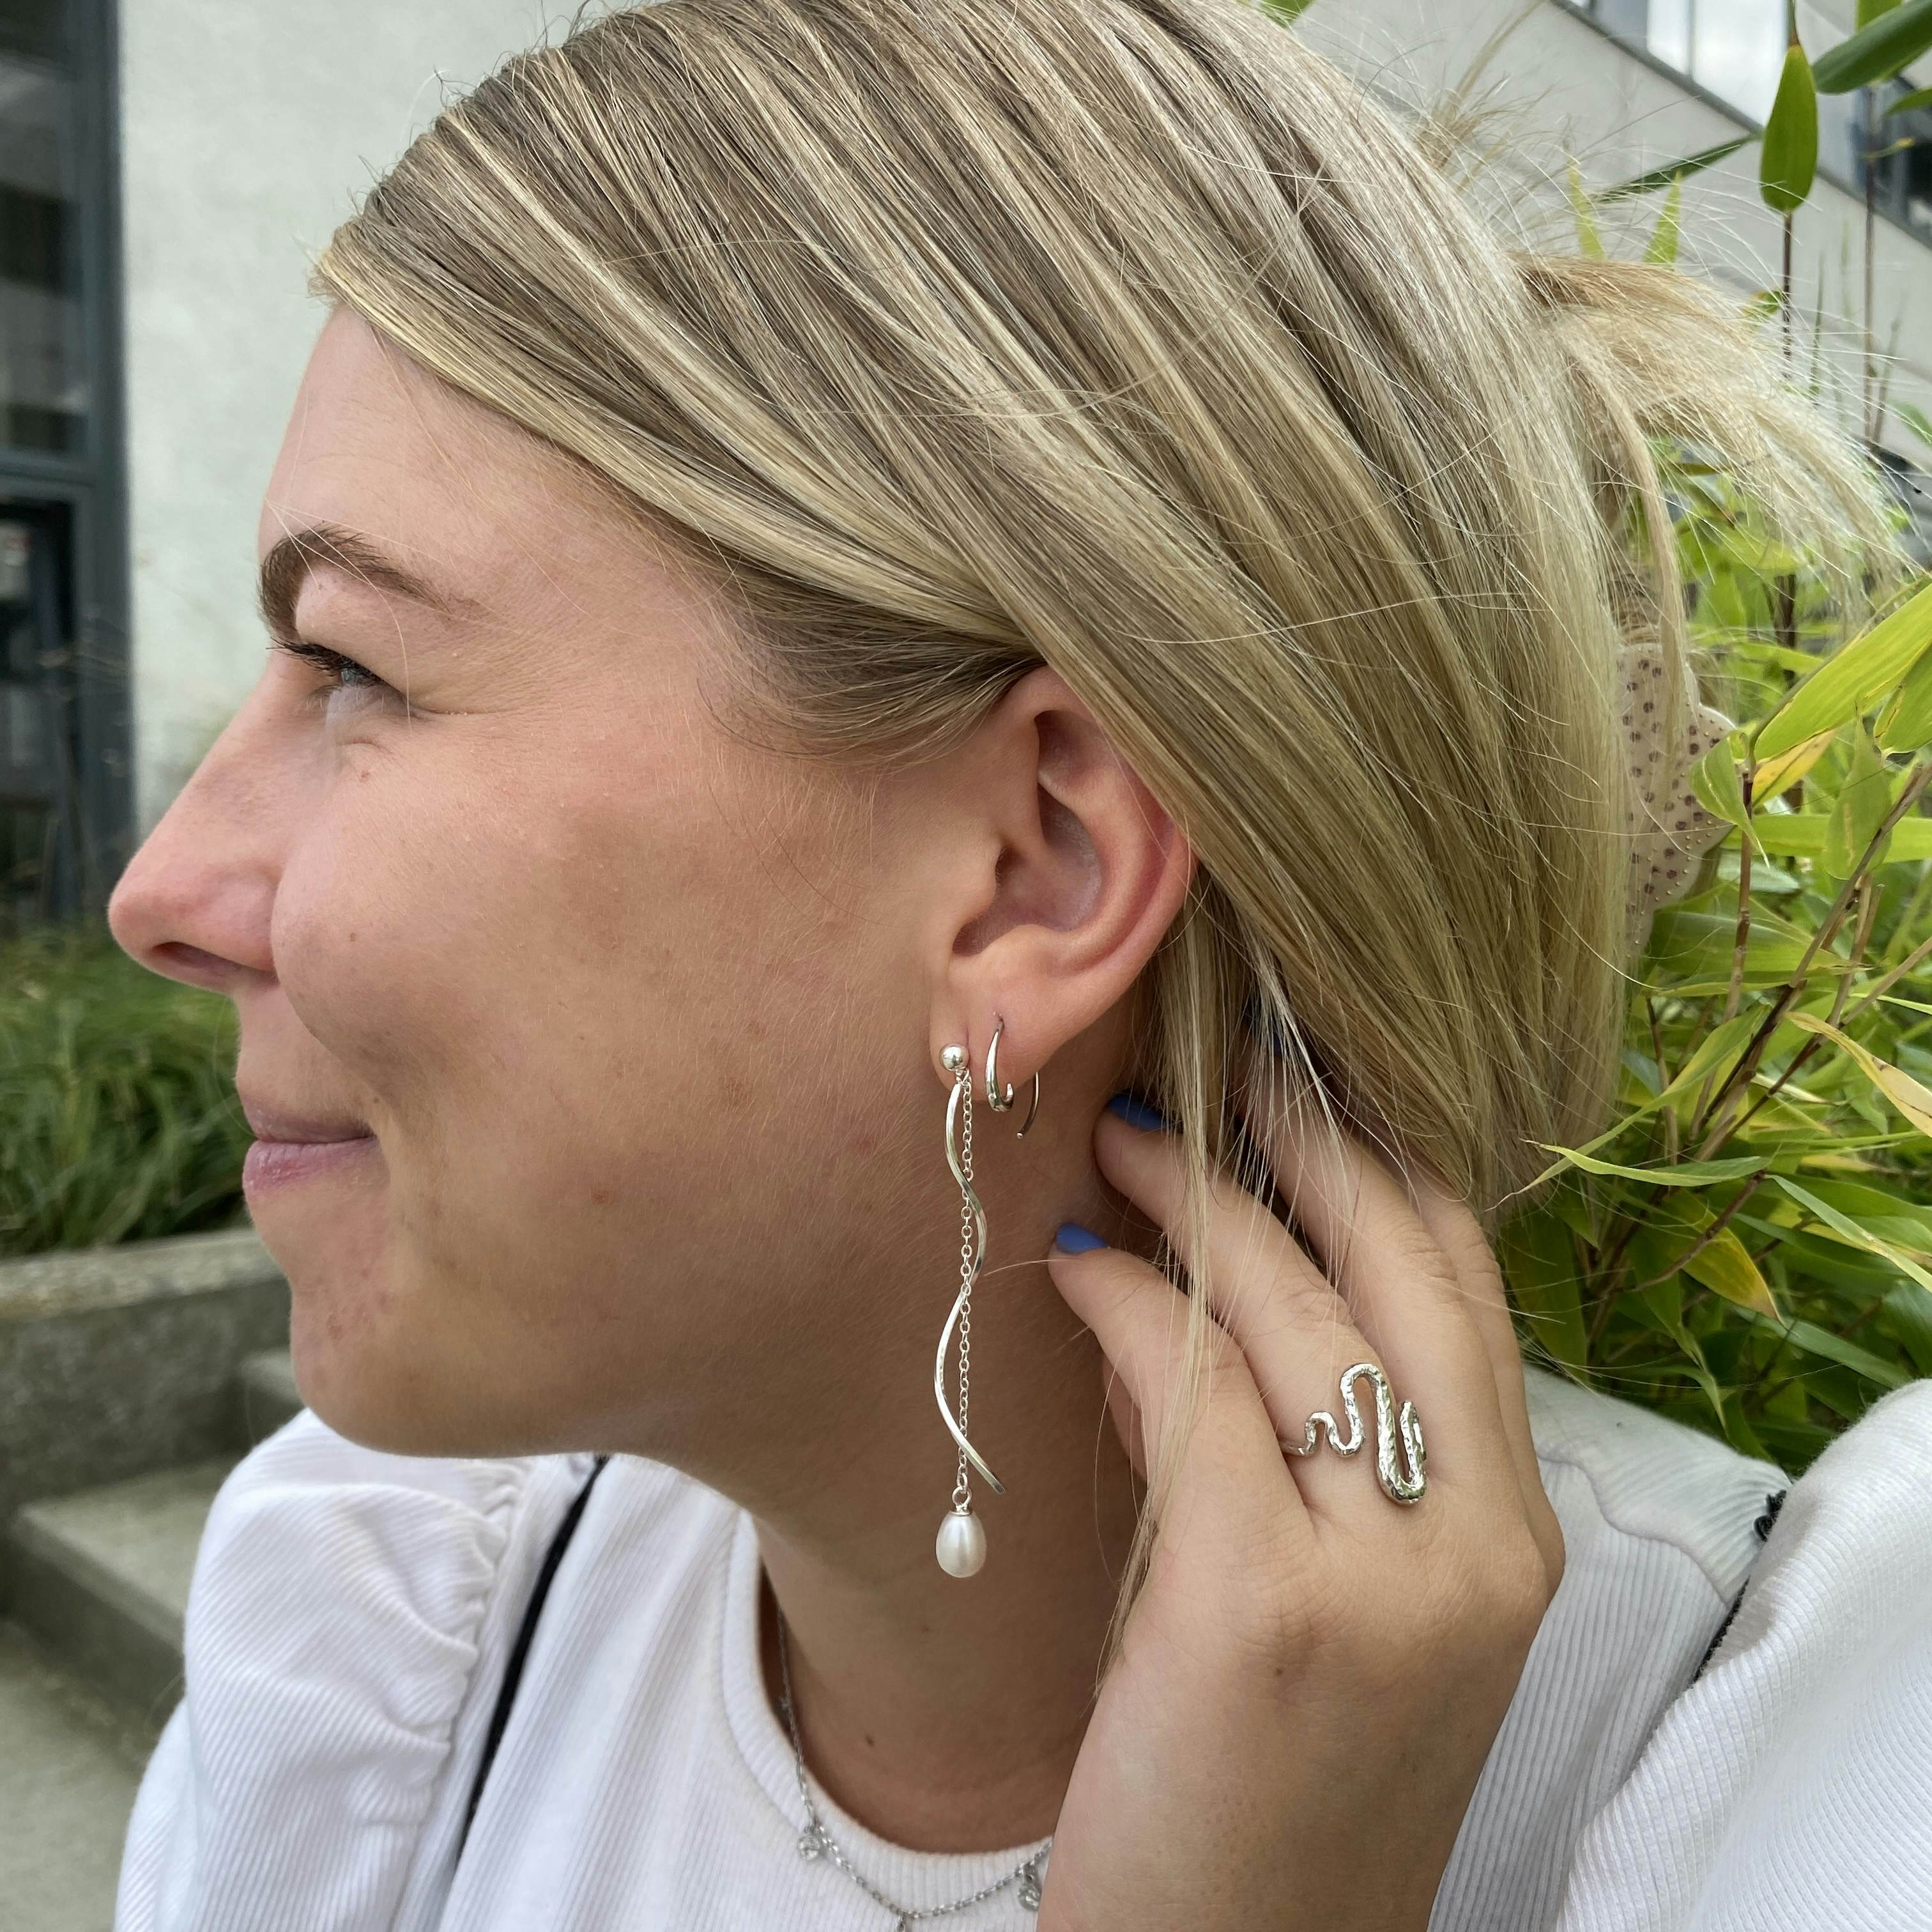 Anne Freshwaterpearl earrings von By Anne in Silber Sterling 925